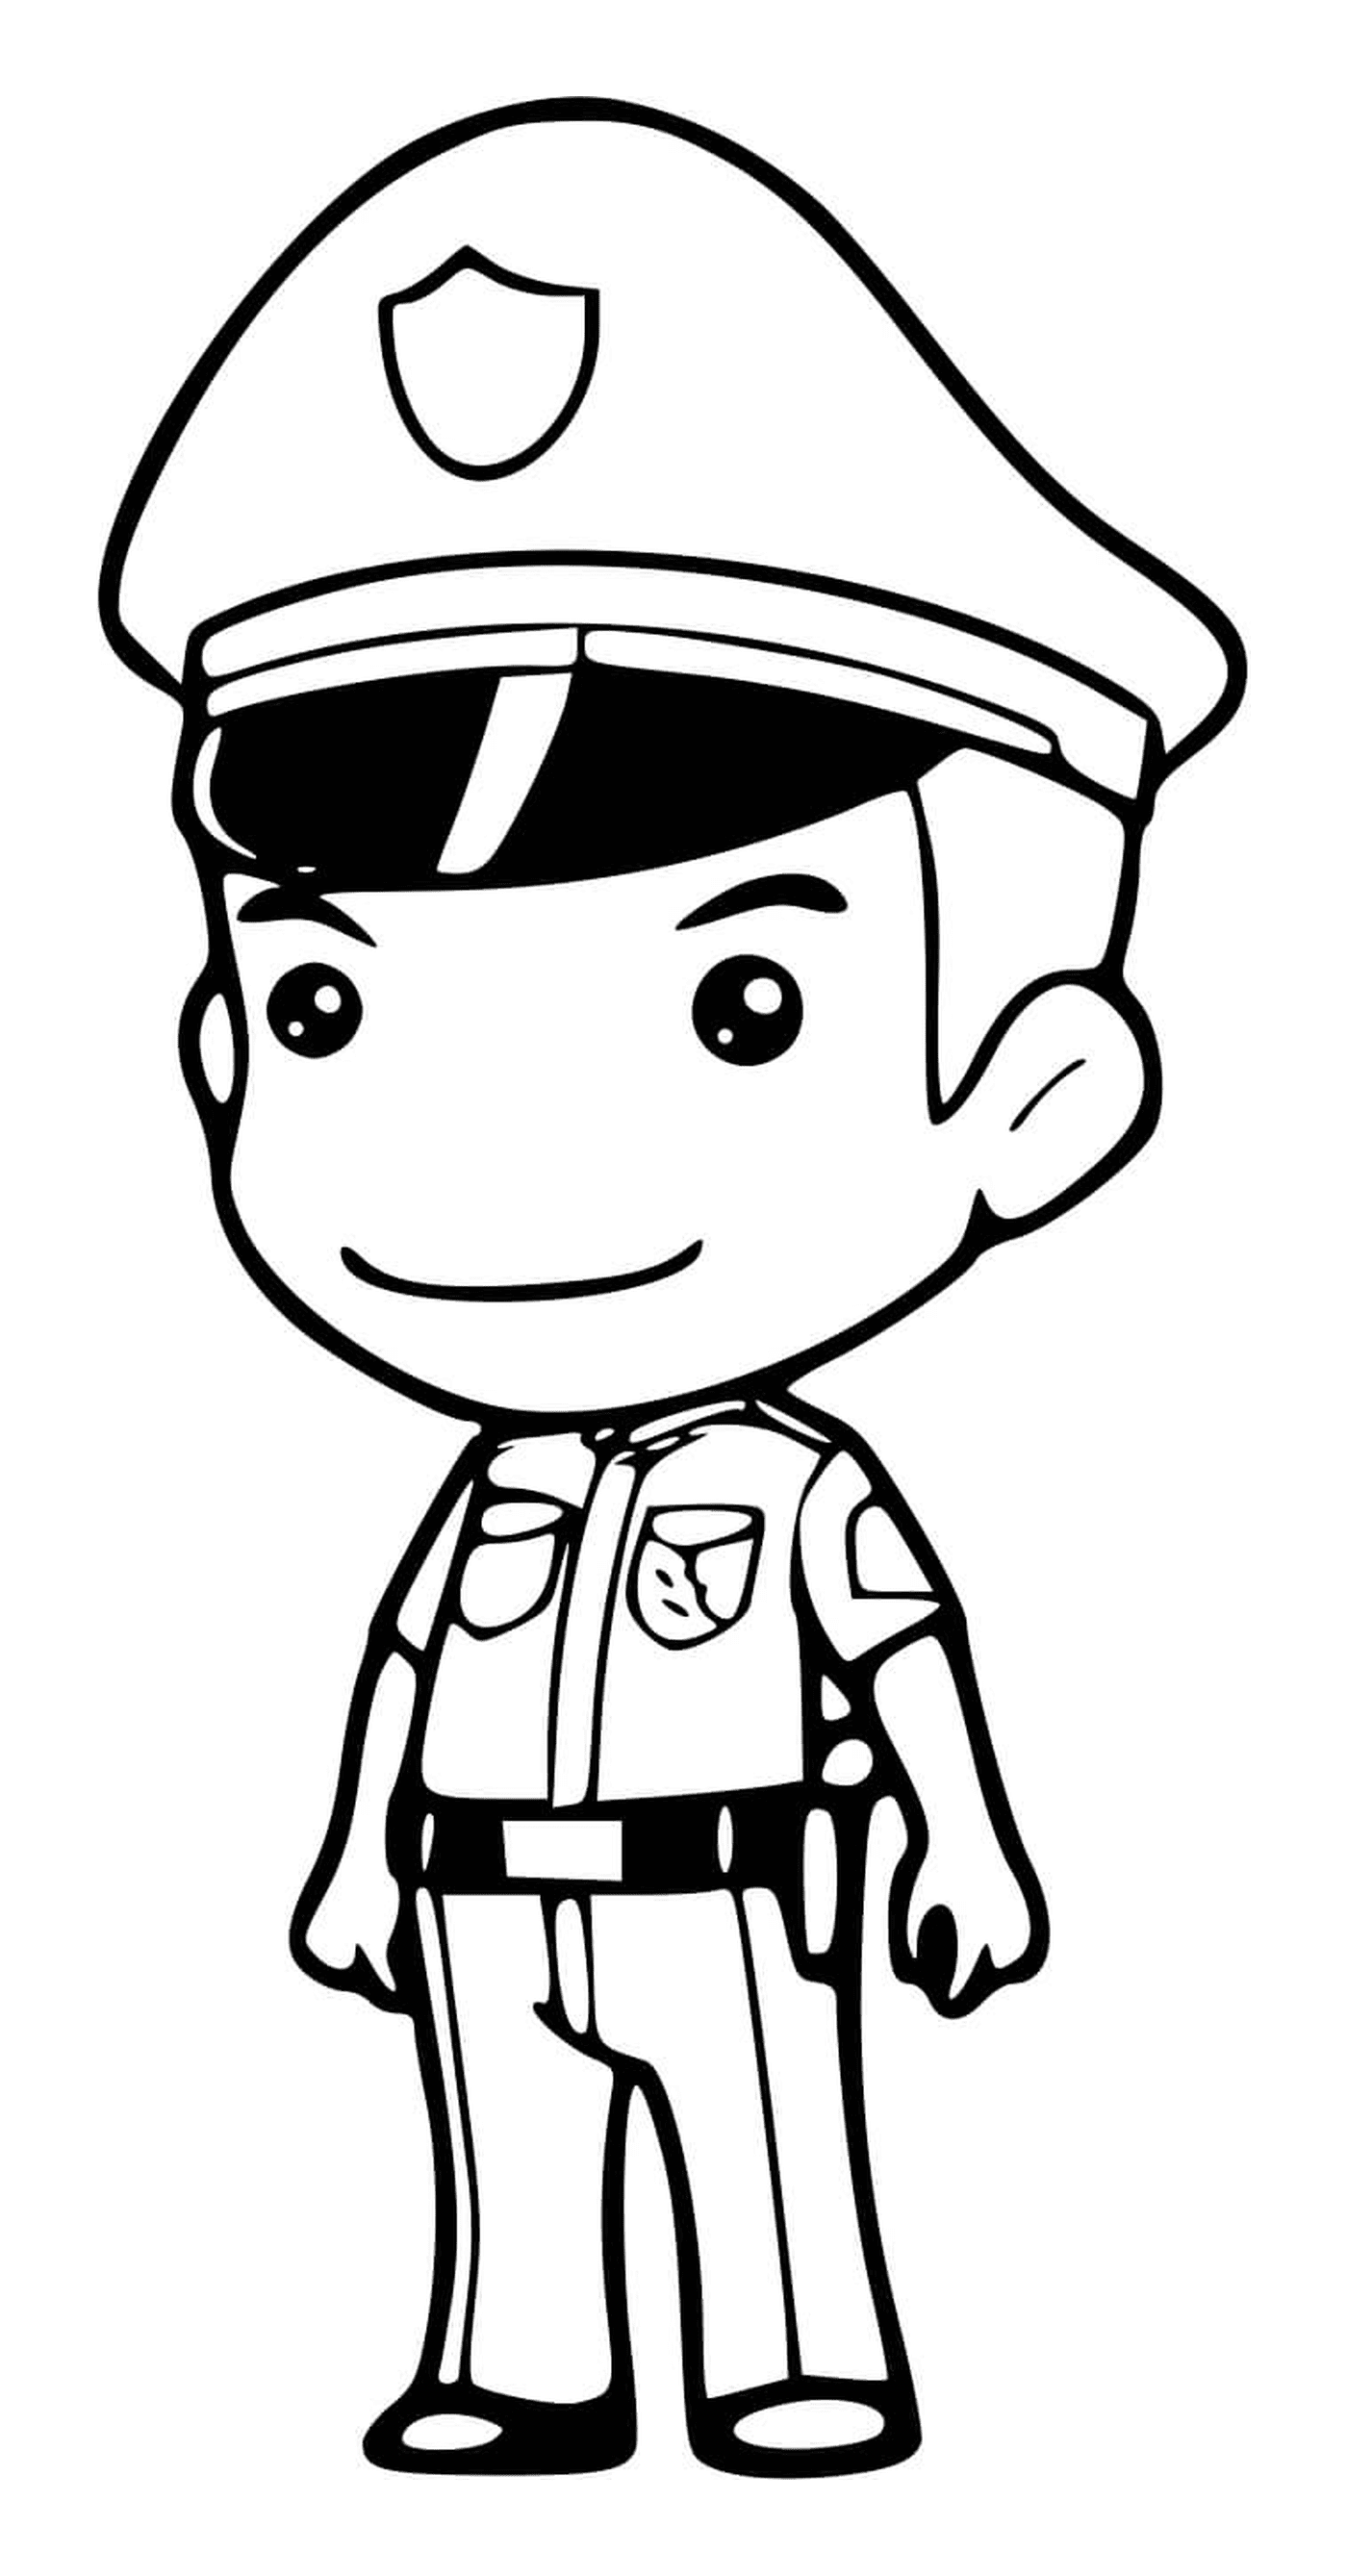  Agente de policía en servicio 